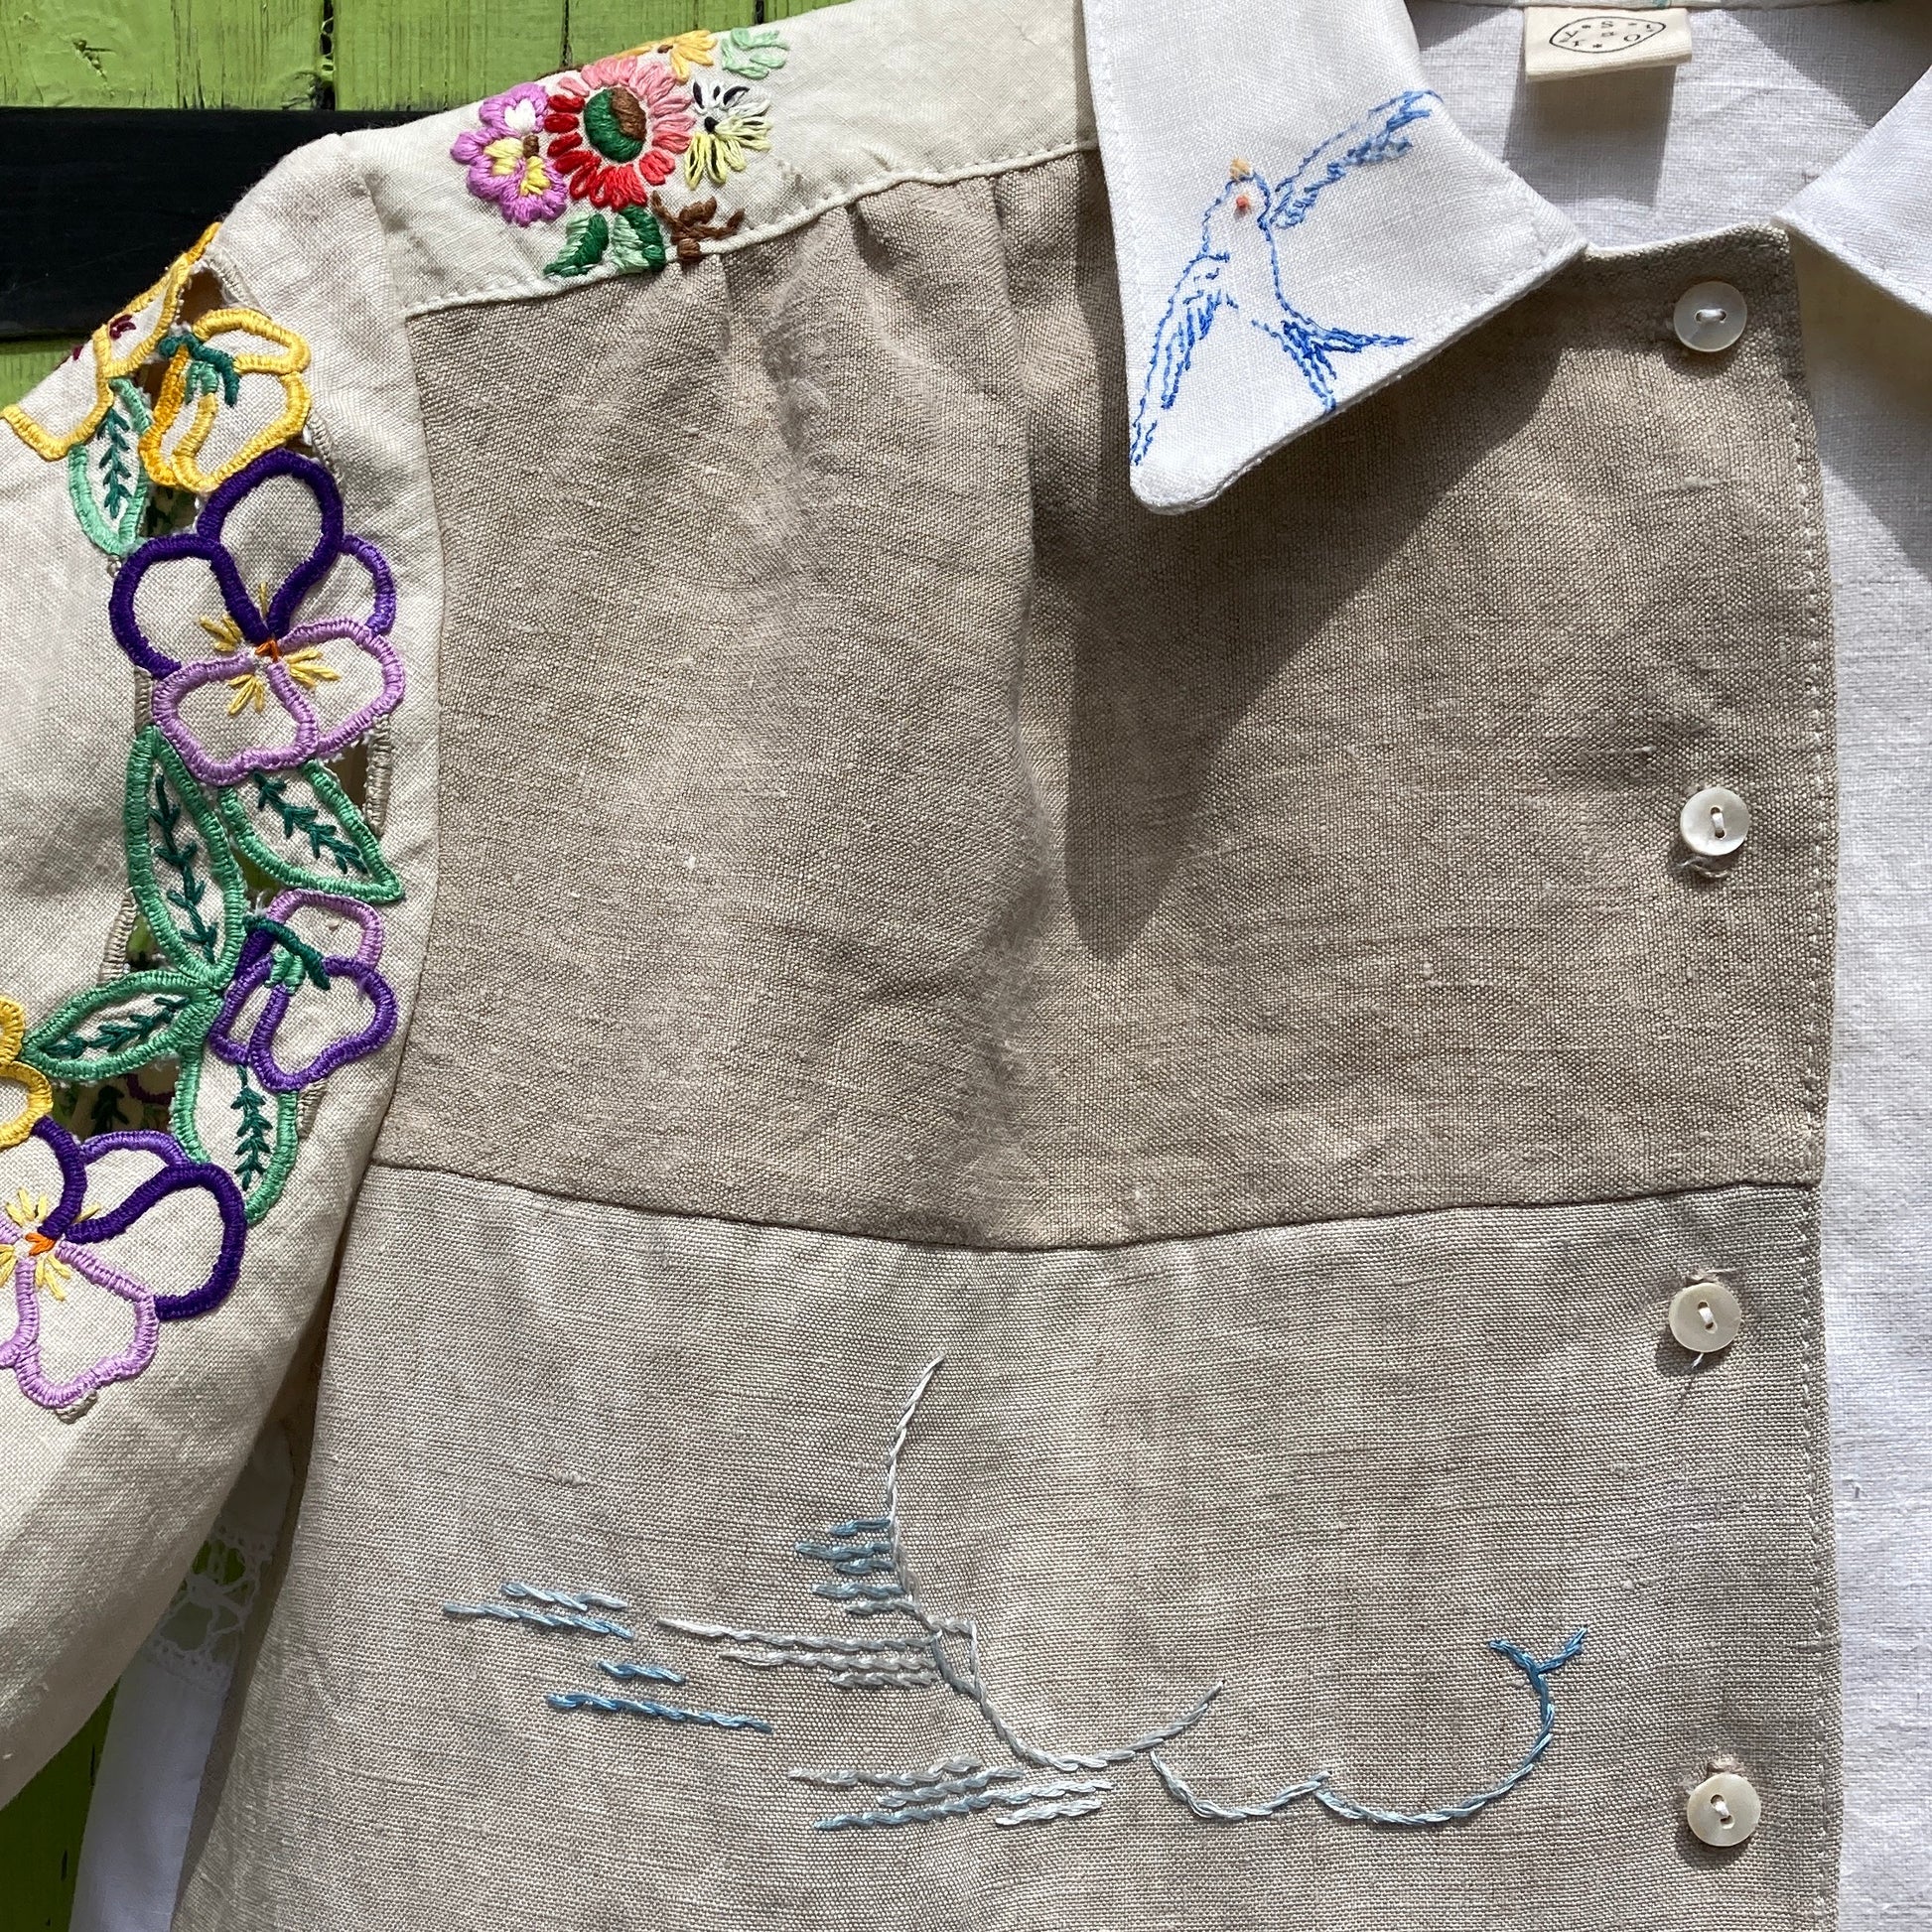 Handmade bluebird patchwork tablecloth shirt – a circular story